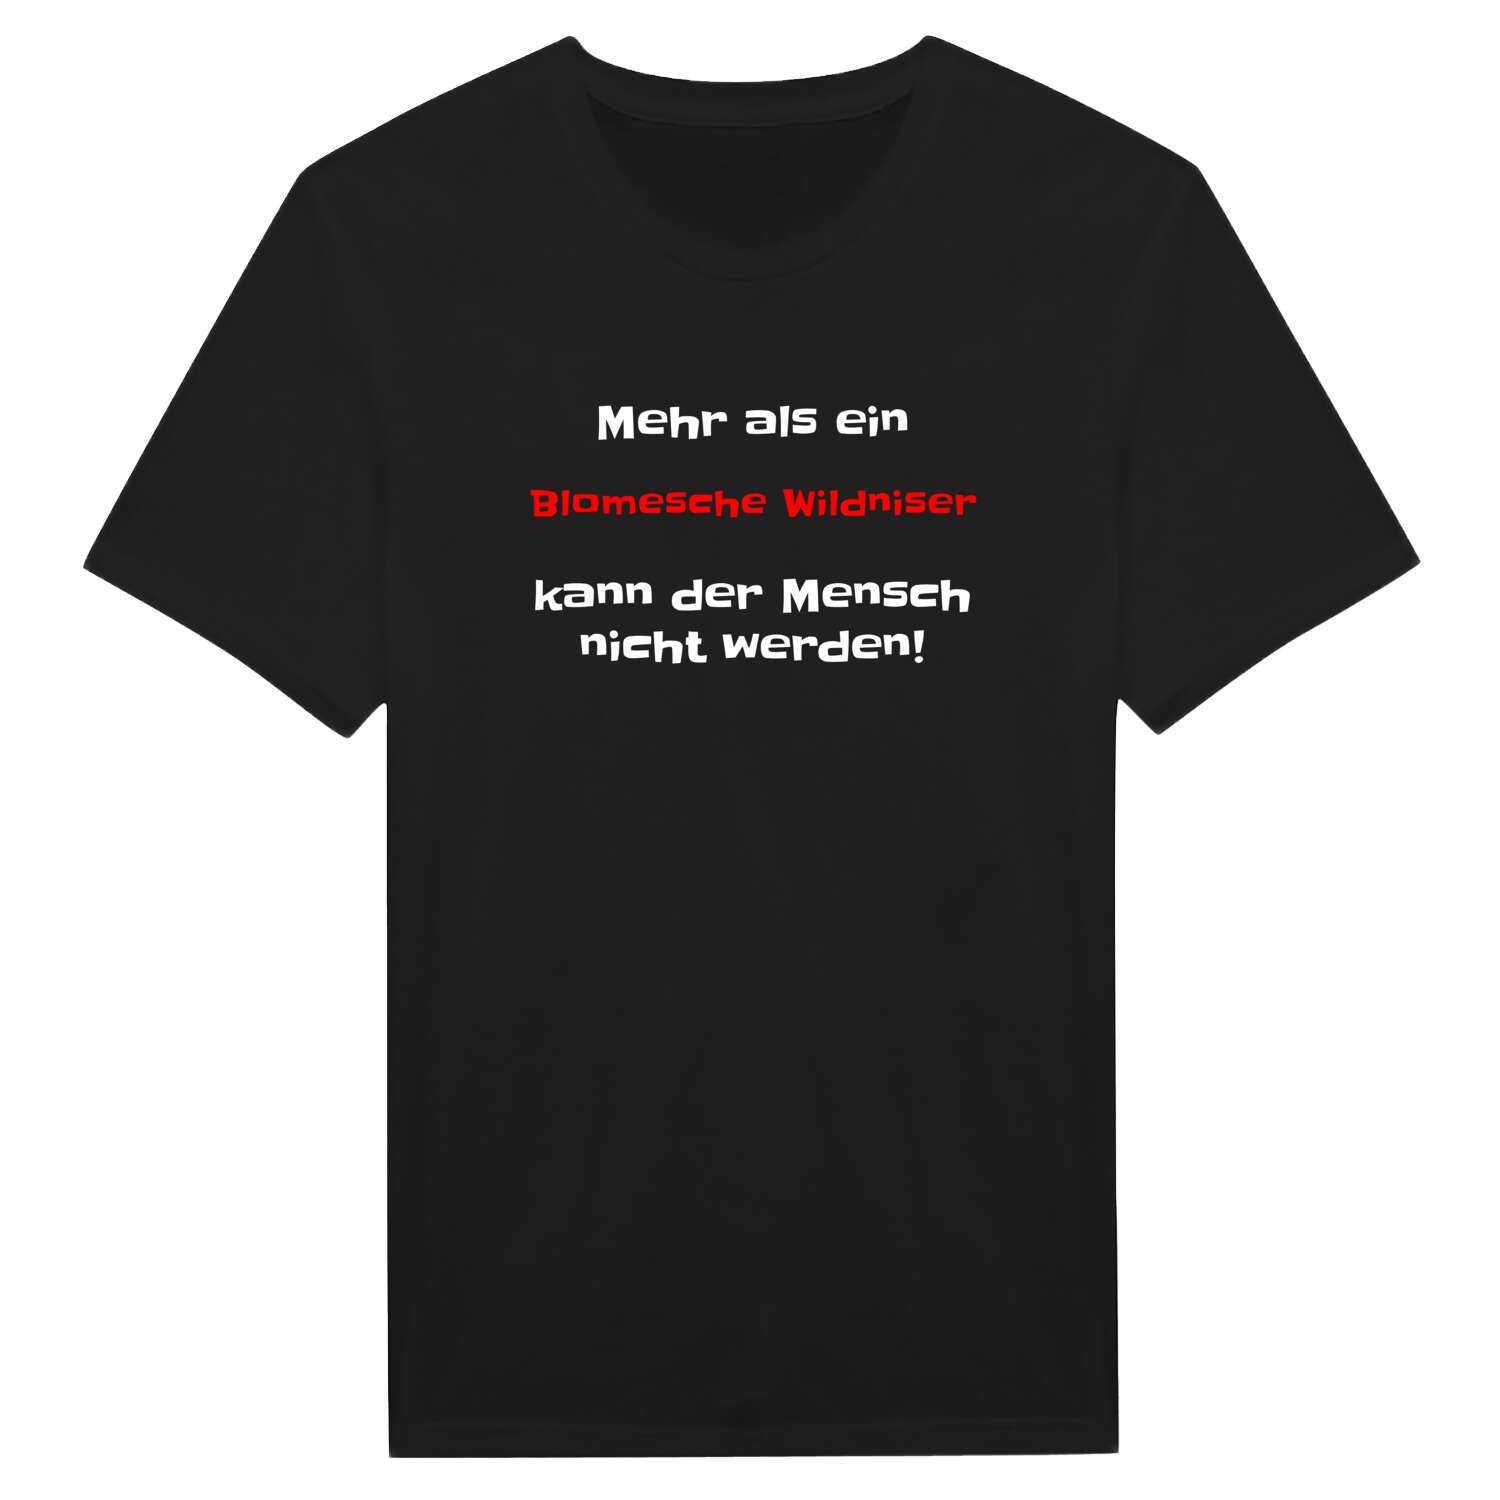 Blomesche Wildnis T-Shirt »Mehr als ein«